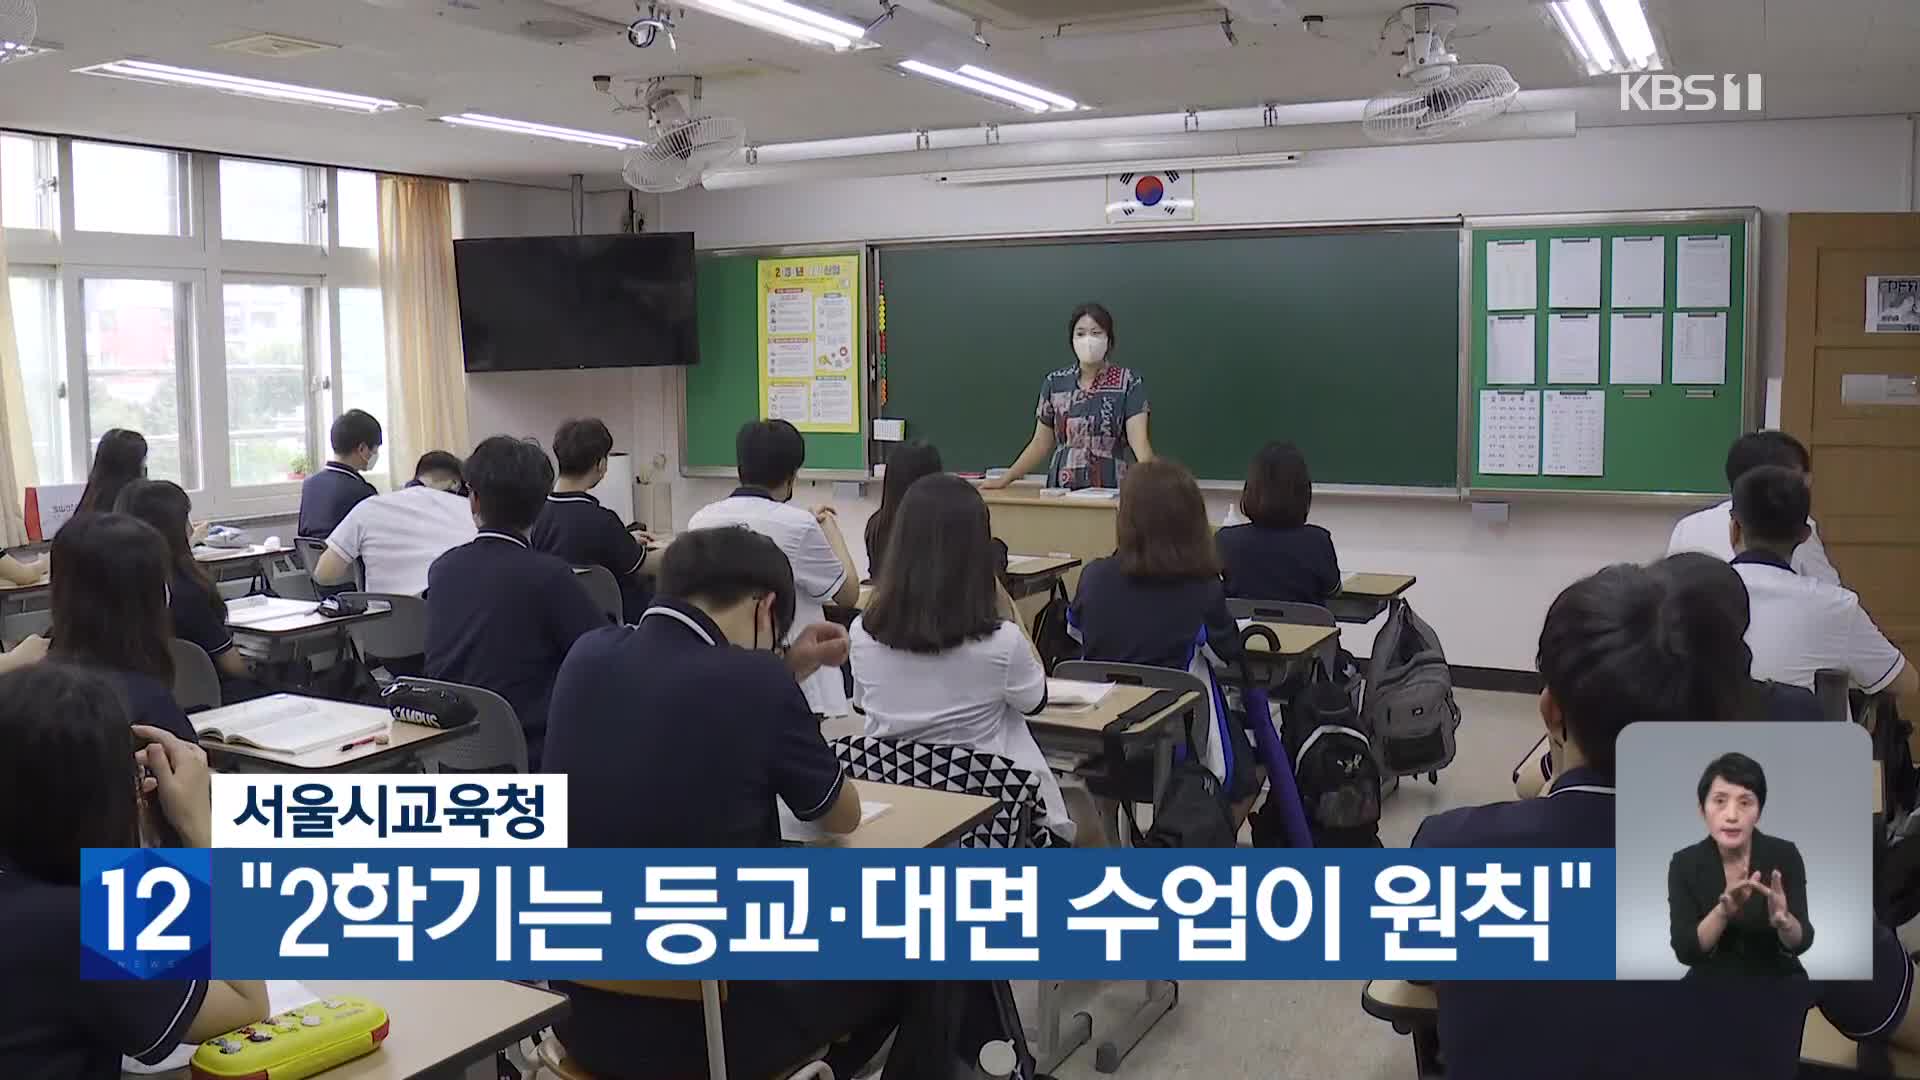 서울시교육청 “2학기는 등교·대면 수업이 원칙”